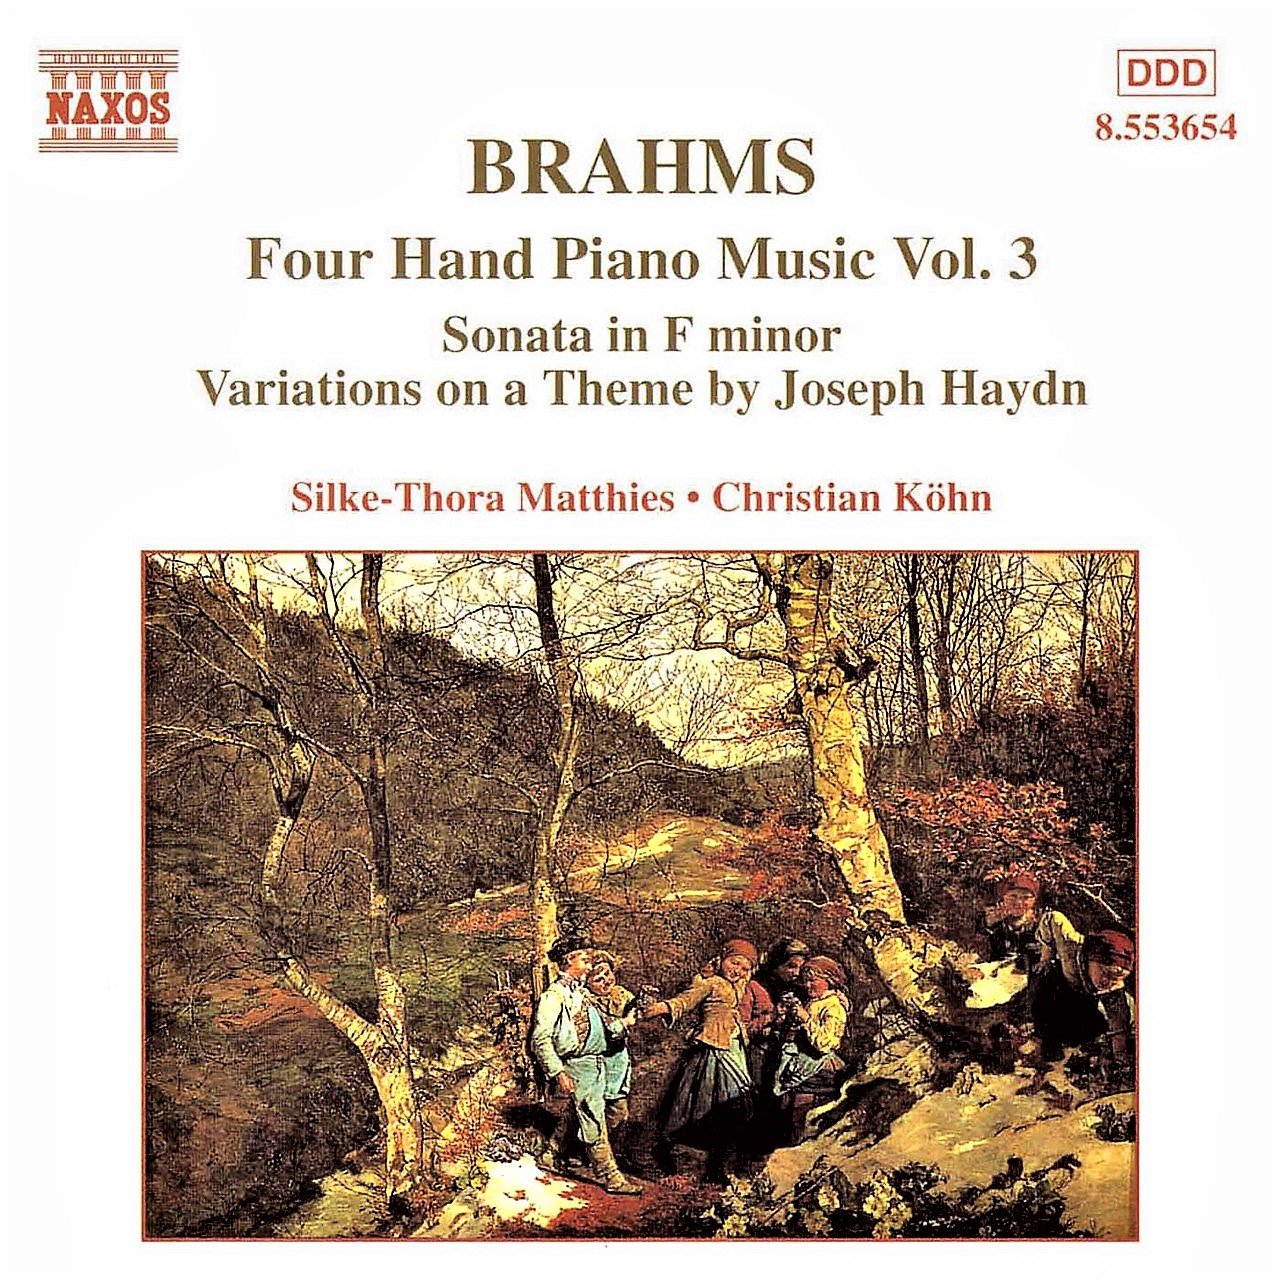 BRAHMS: Four-Hand Piano Music, Vol. 3 — Johannes Brahms | Last.fm